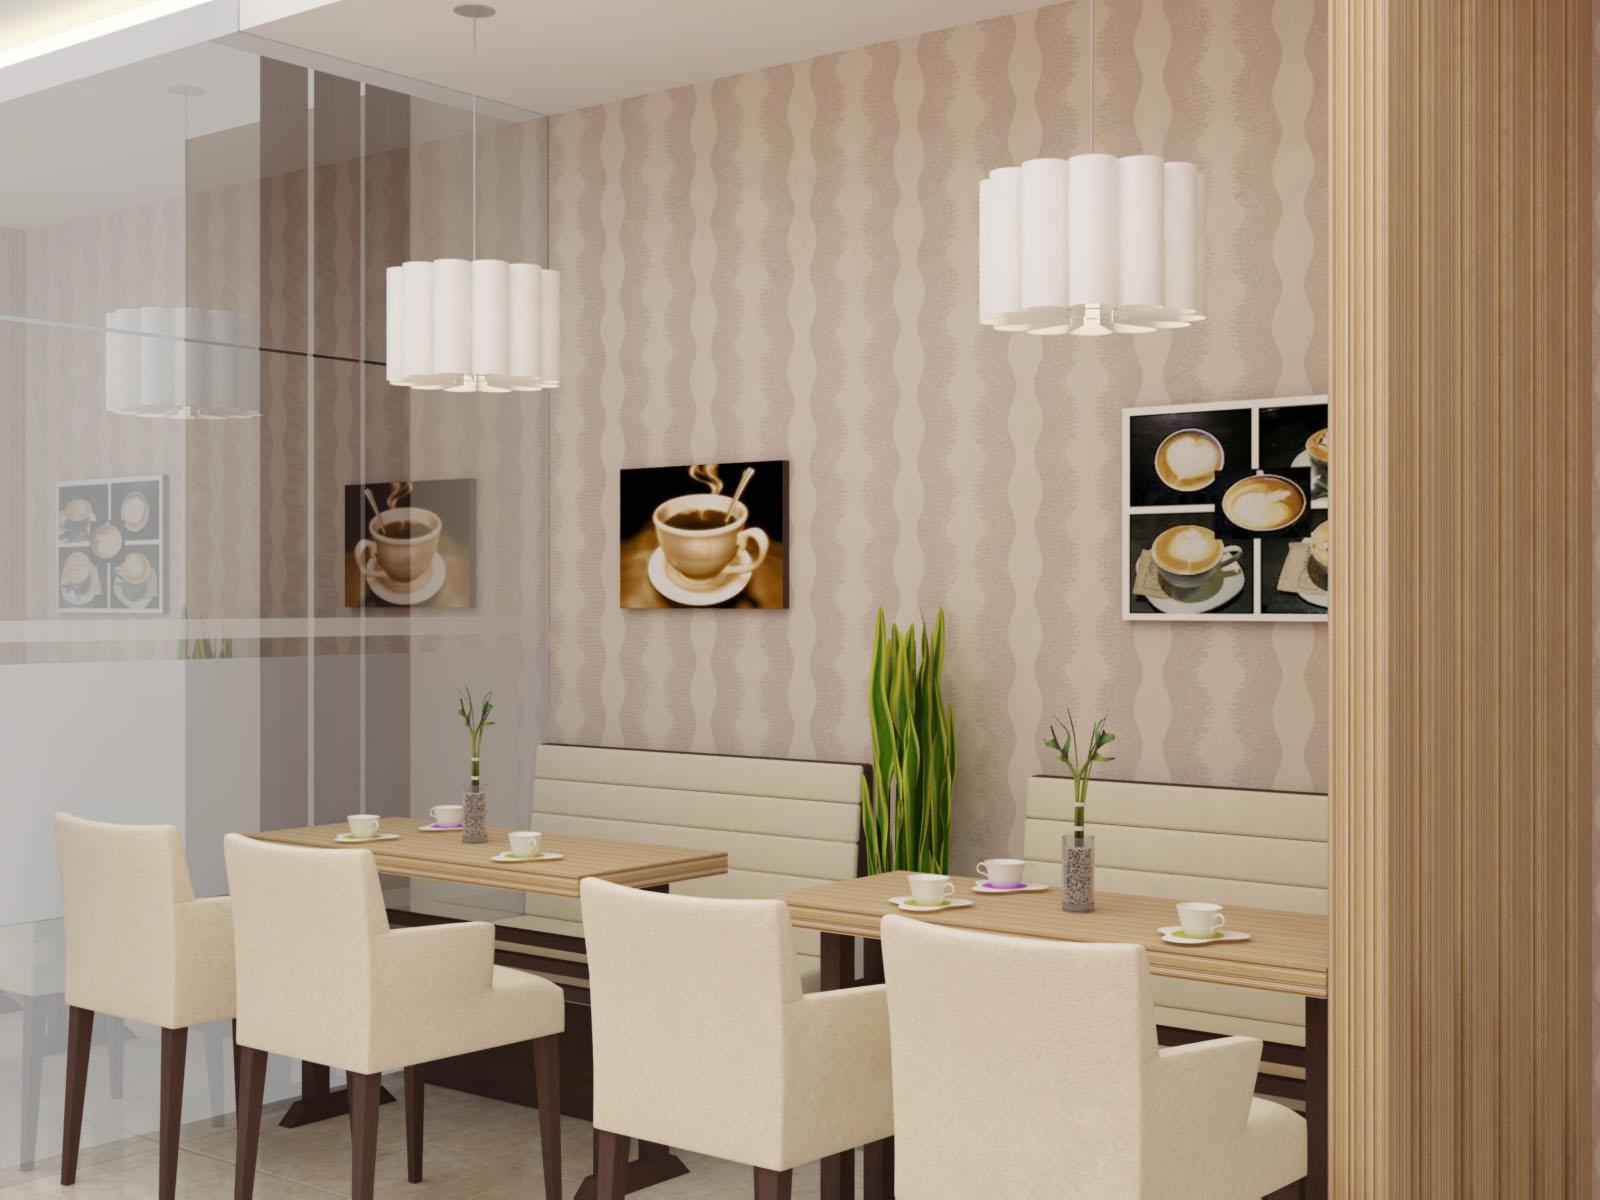  Jasa  desain  Interior Restoran dan Cafe  Ruang makan JASA  